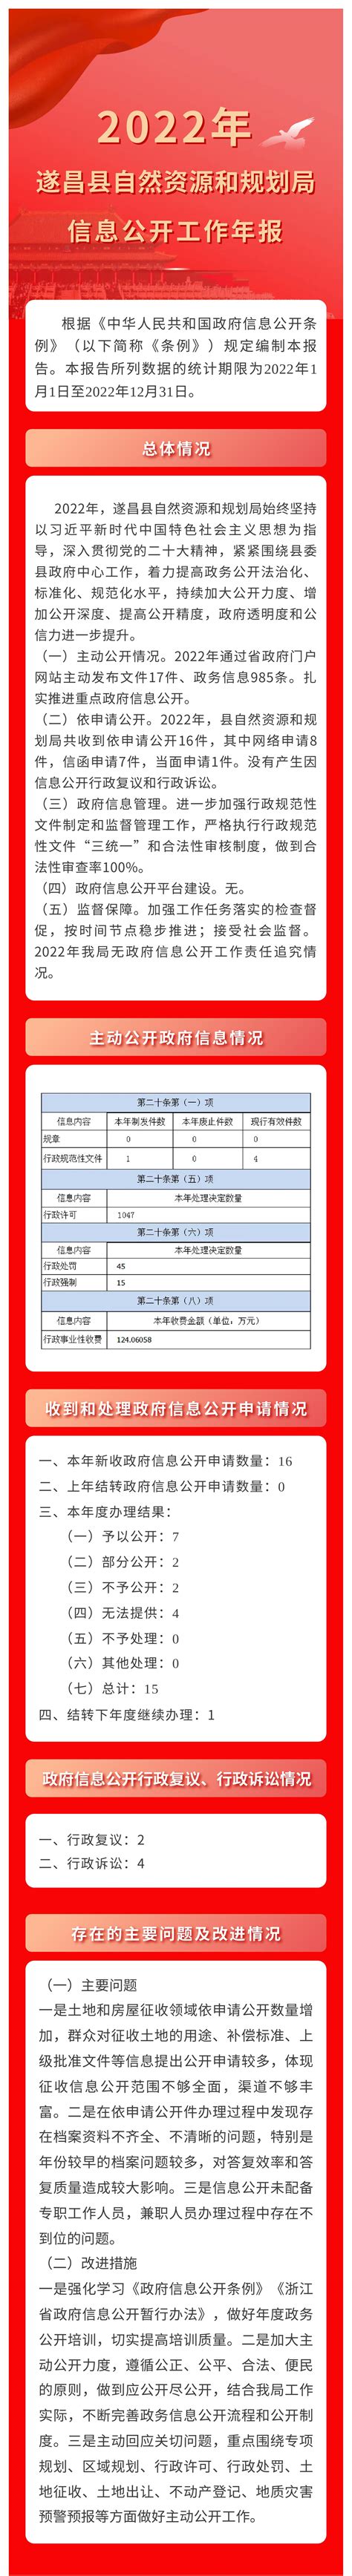 遂昌县化工园区控制性详细规划方案公示